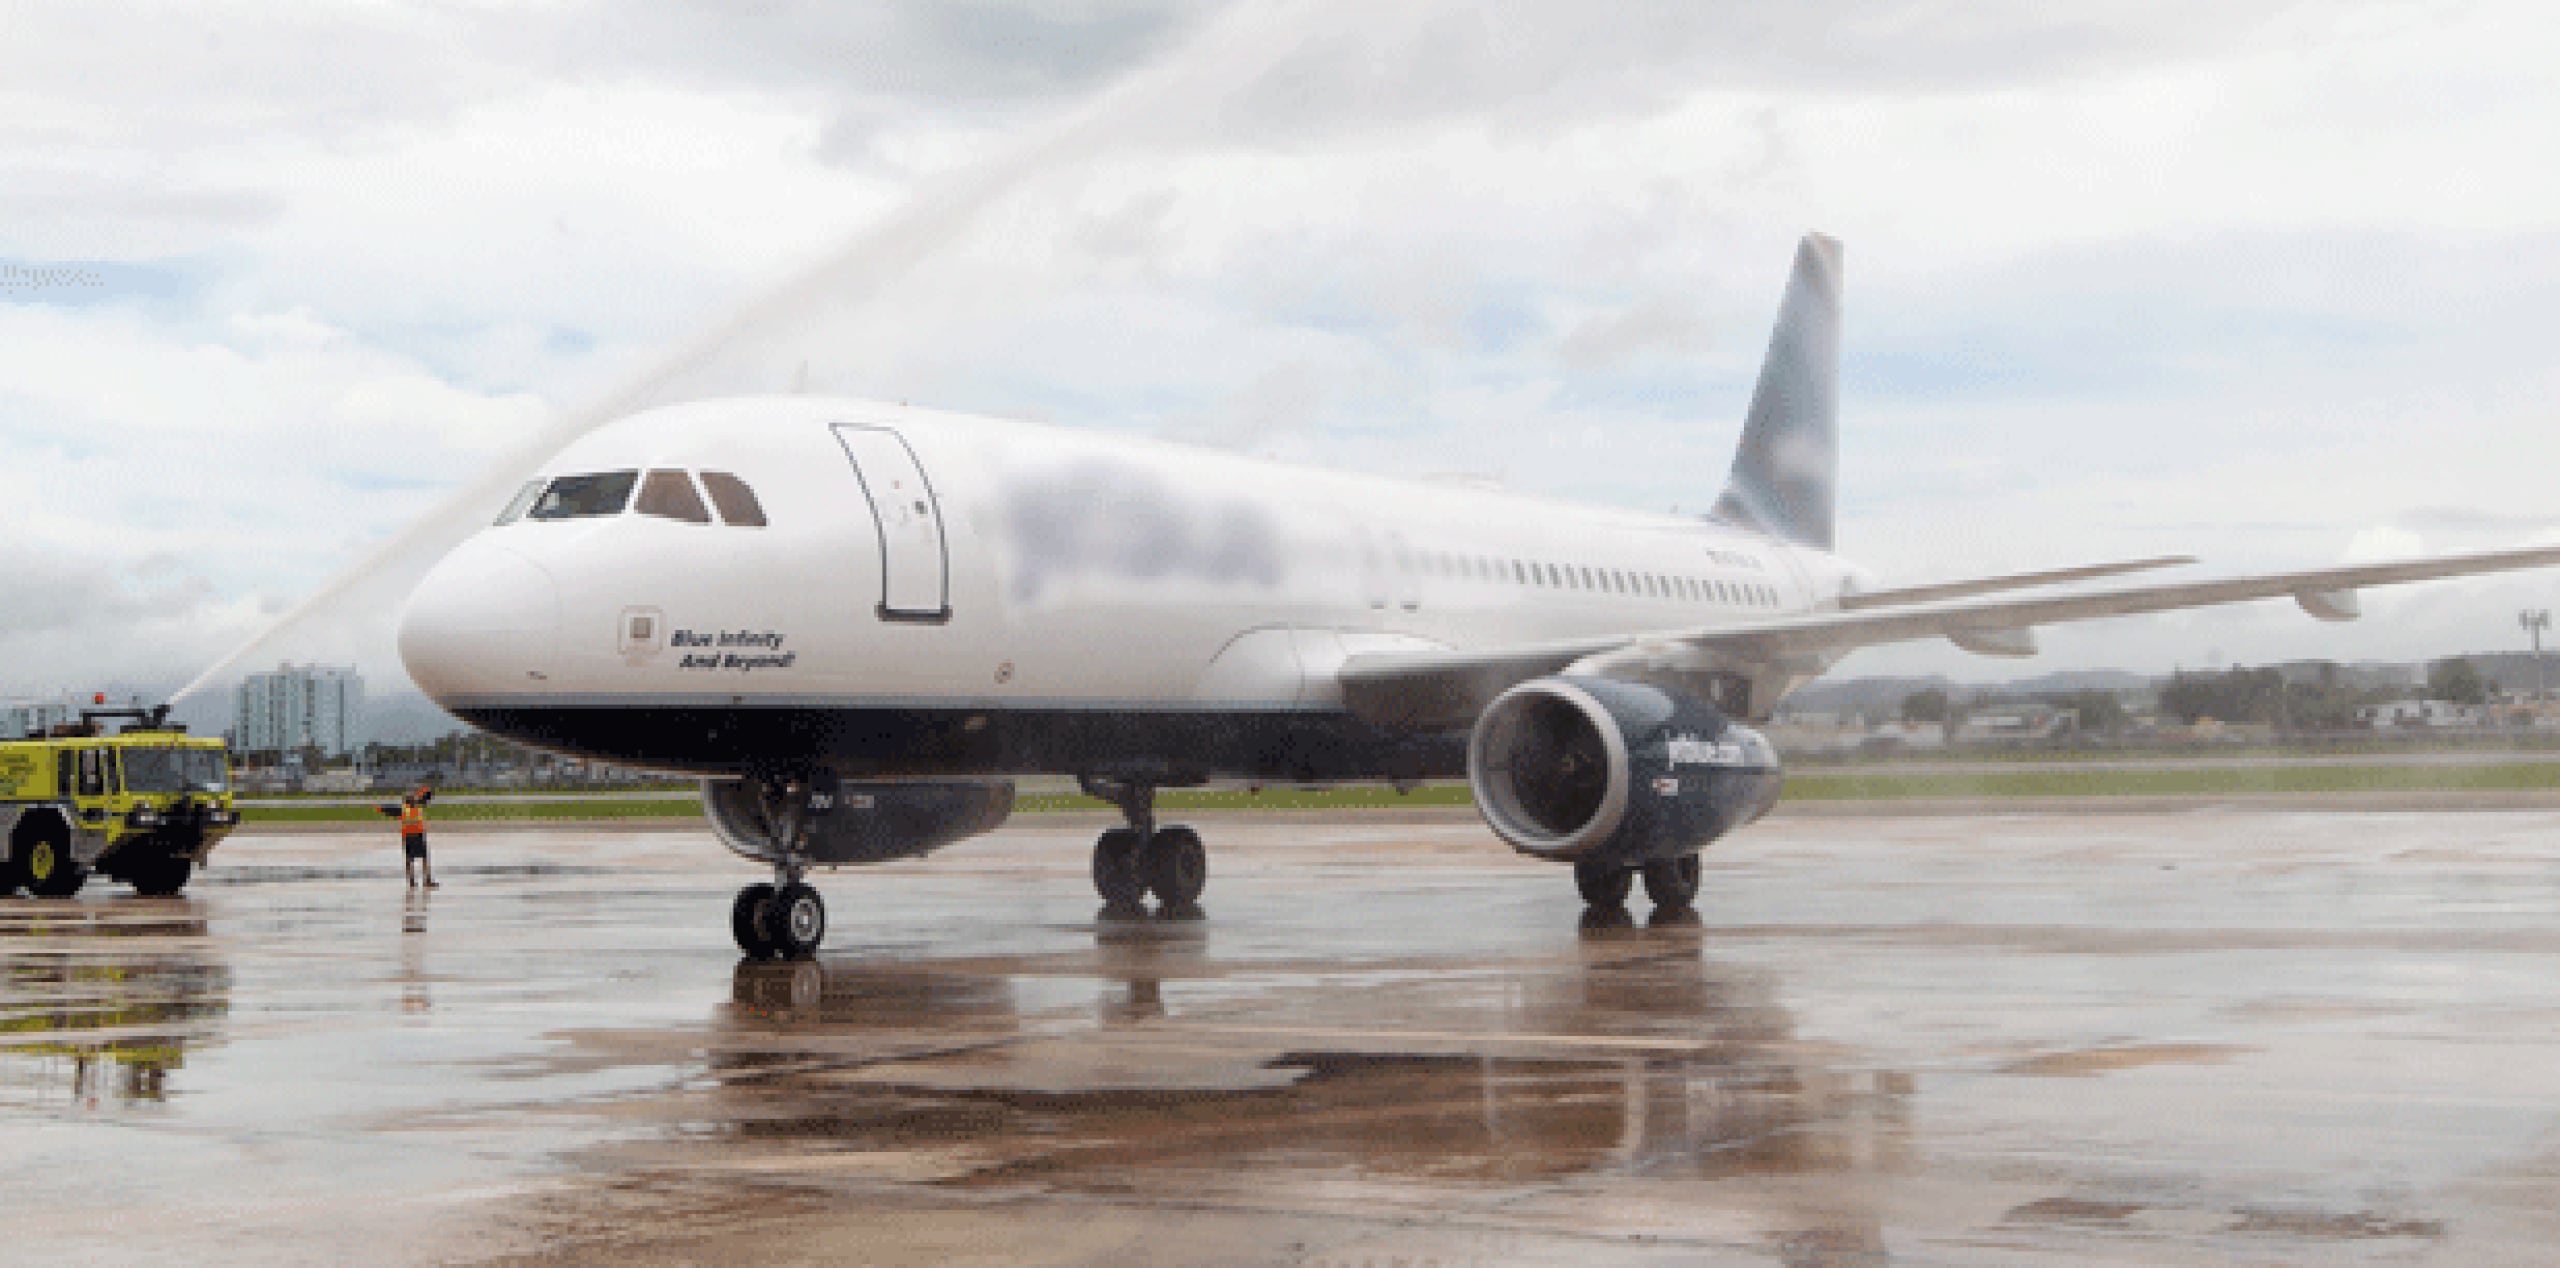 A su llegada, la aeronave tipo A319 con capacidad para 124 pasajeros, fue recibida con el simbólico arco de agua, ante la presencia de los ejecutivos de Aeropuertos Dominicanos Siglo XXI (Aerodom), de American Airlines, representantes del sector oficial y miembros de la comunidad aeroportuaria. (Archivo)